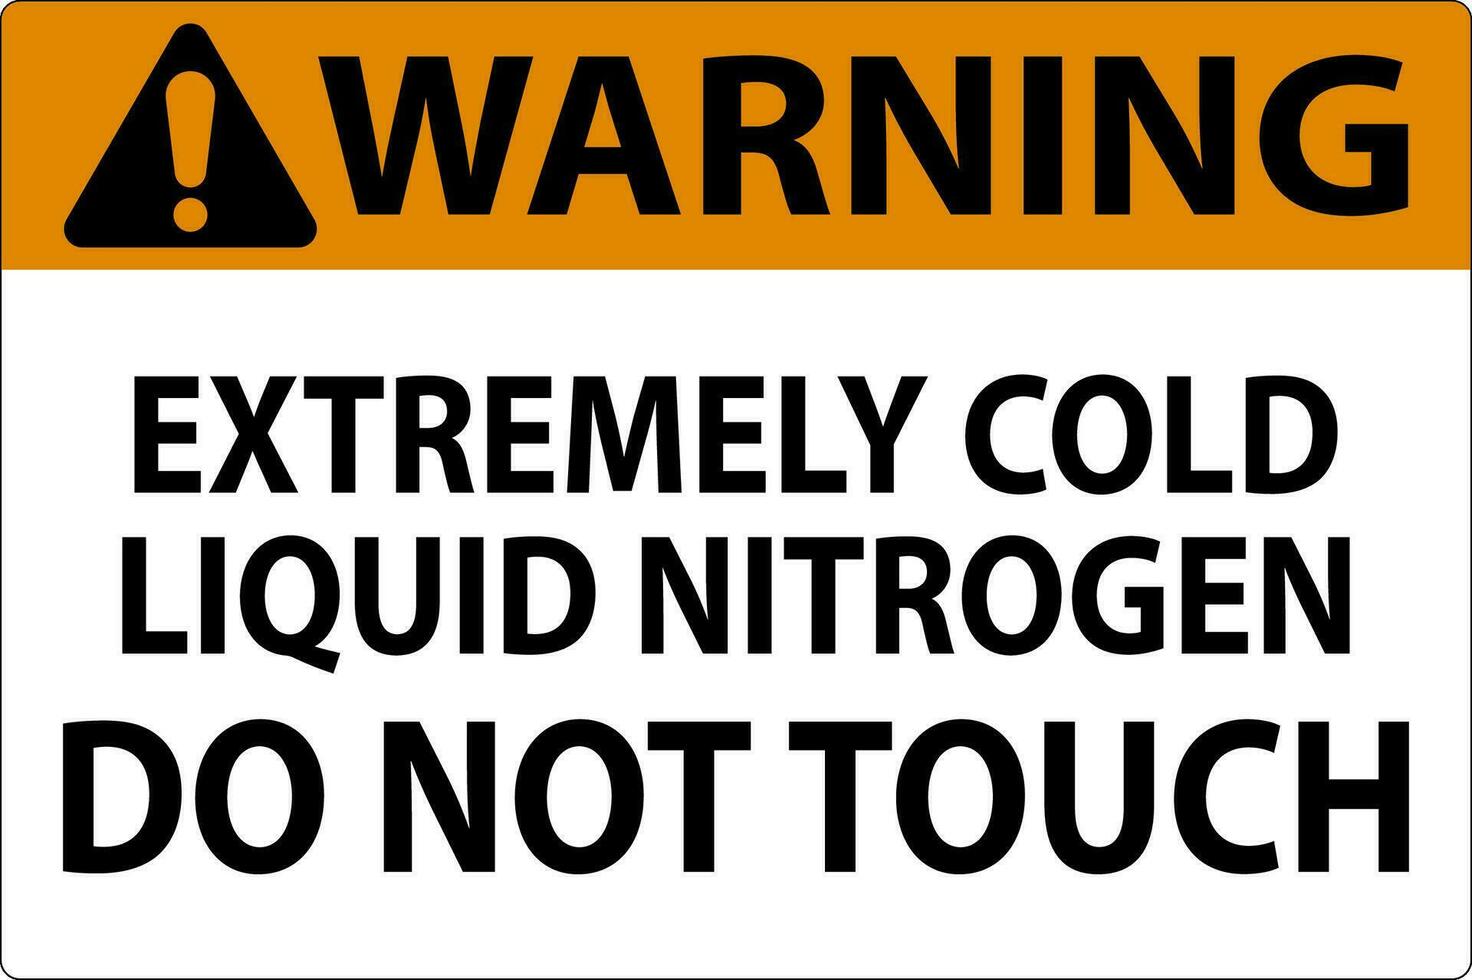 advertencia firmar extremadamente frío líquido nitrógeno hacer no toque vector